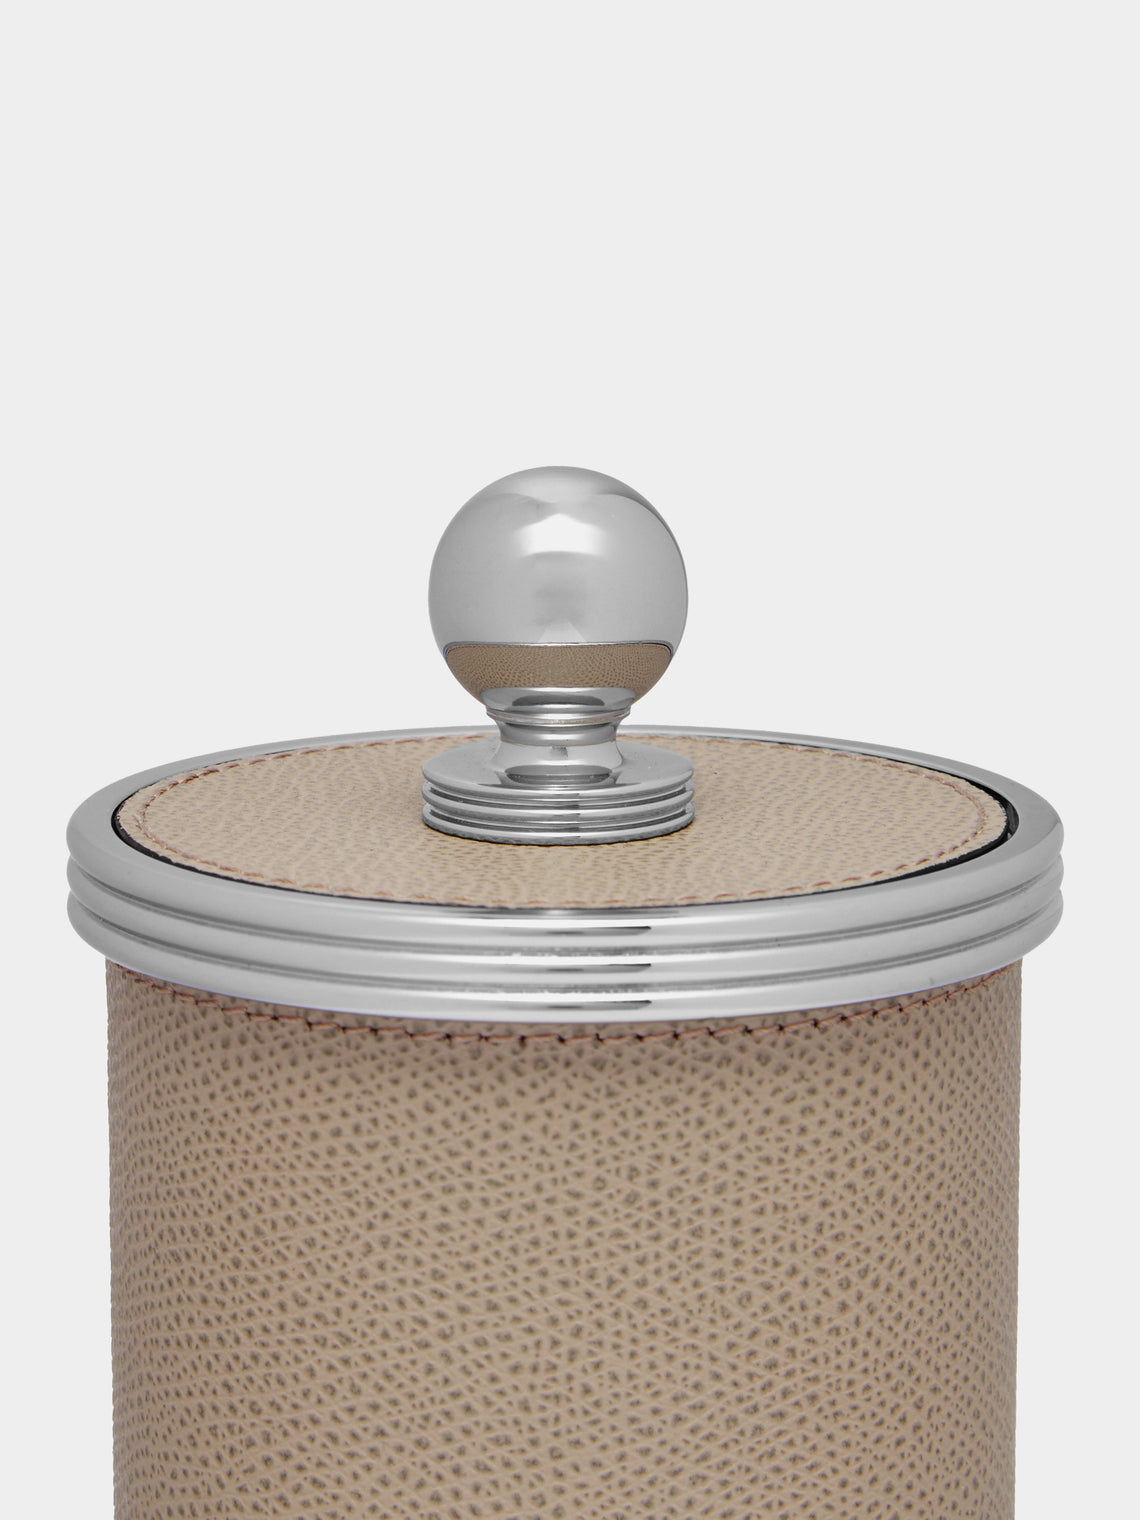 Giobagnara - Amalfi Leather Small Box -  - ABASK